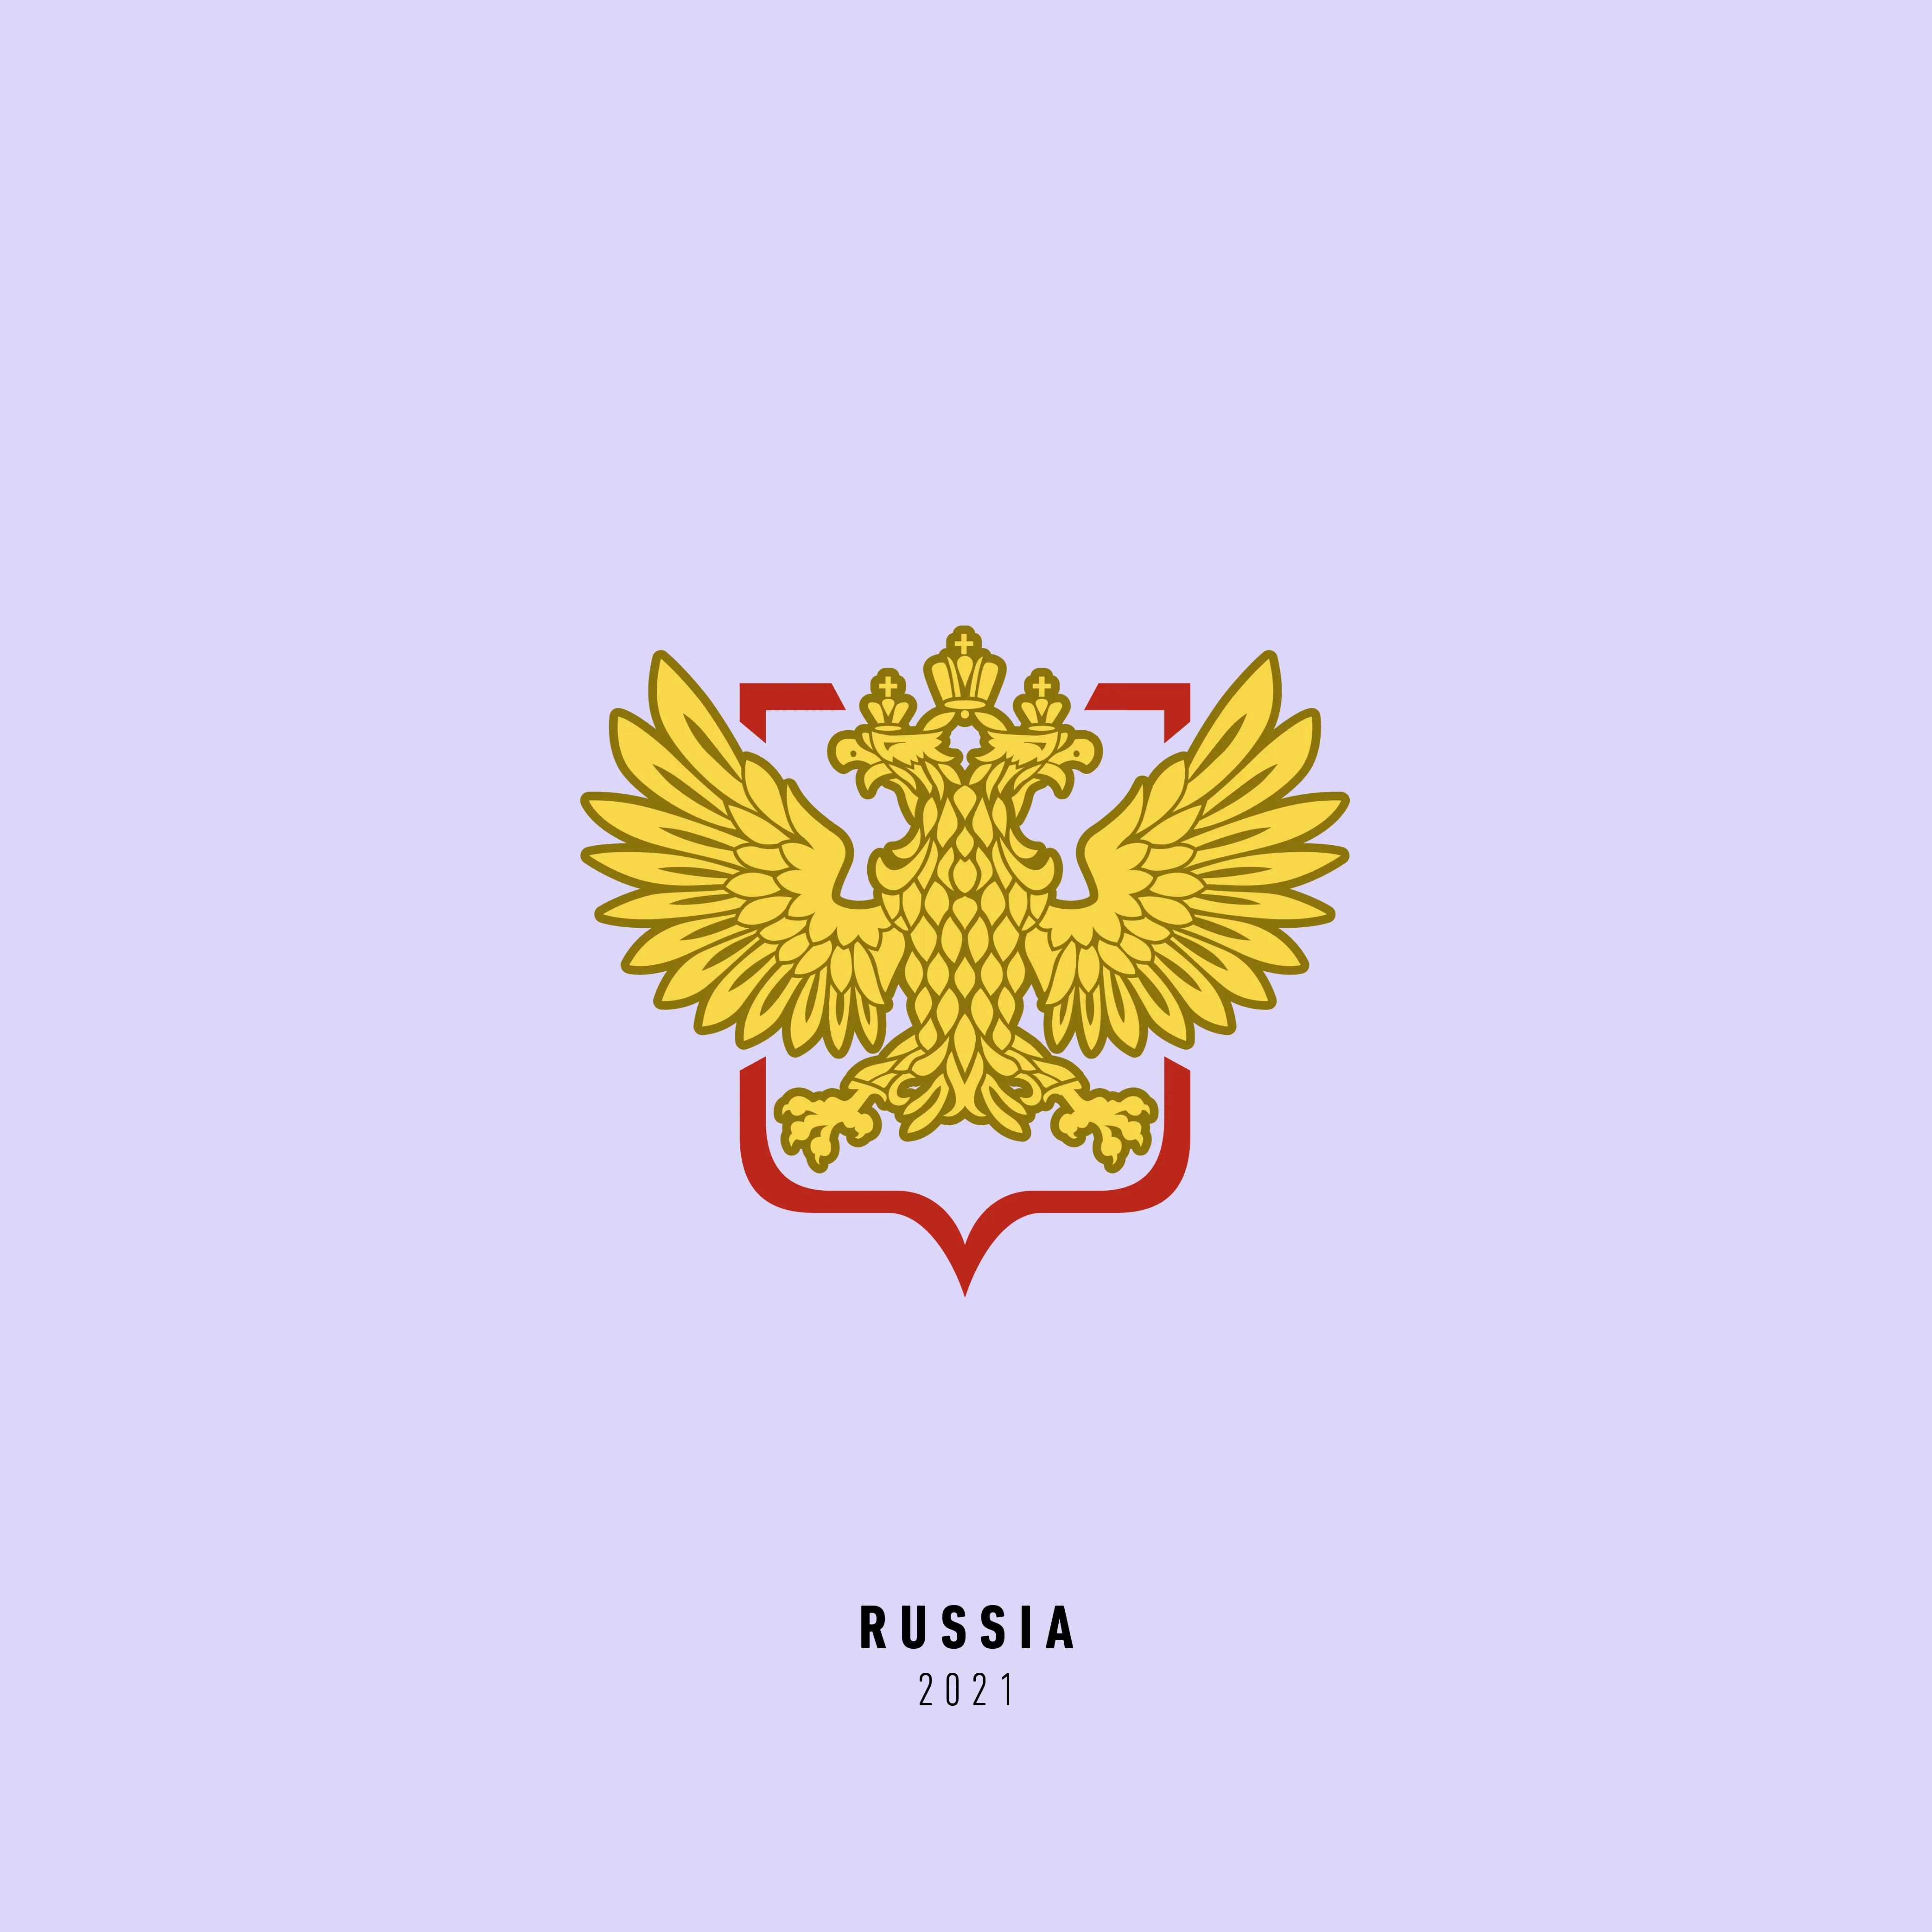 Euro2021 Russia 2021 1